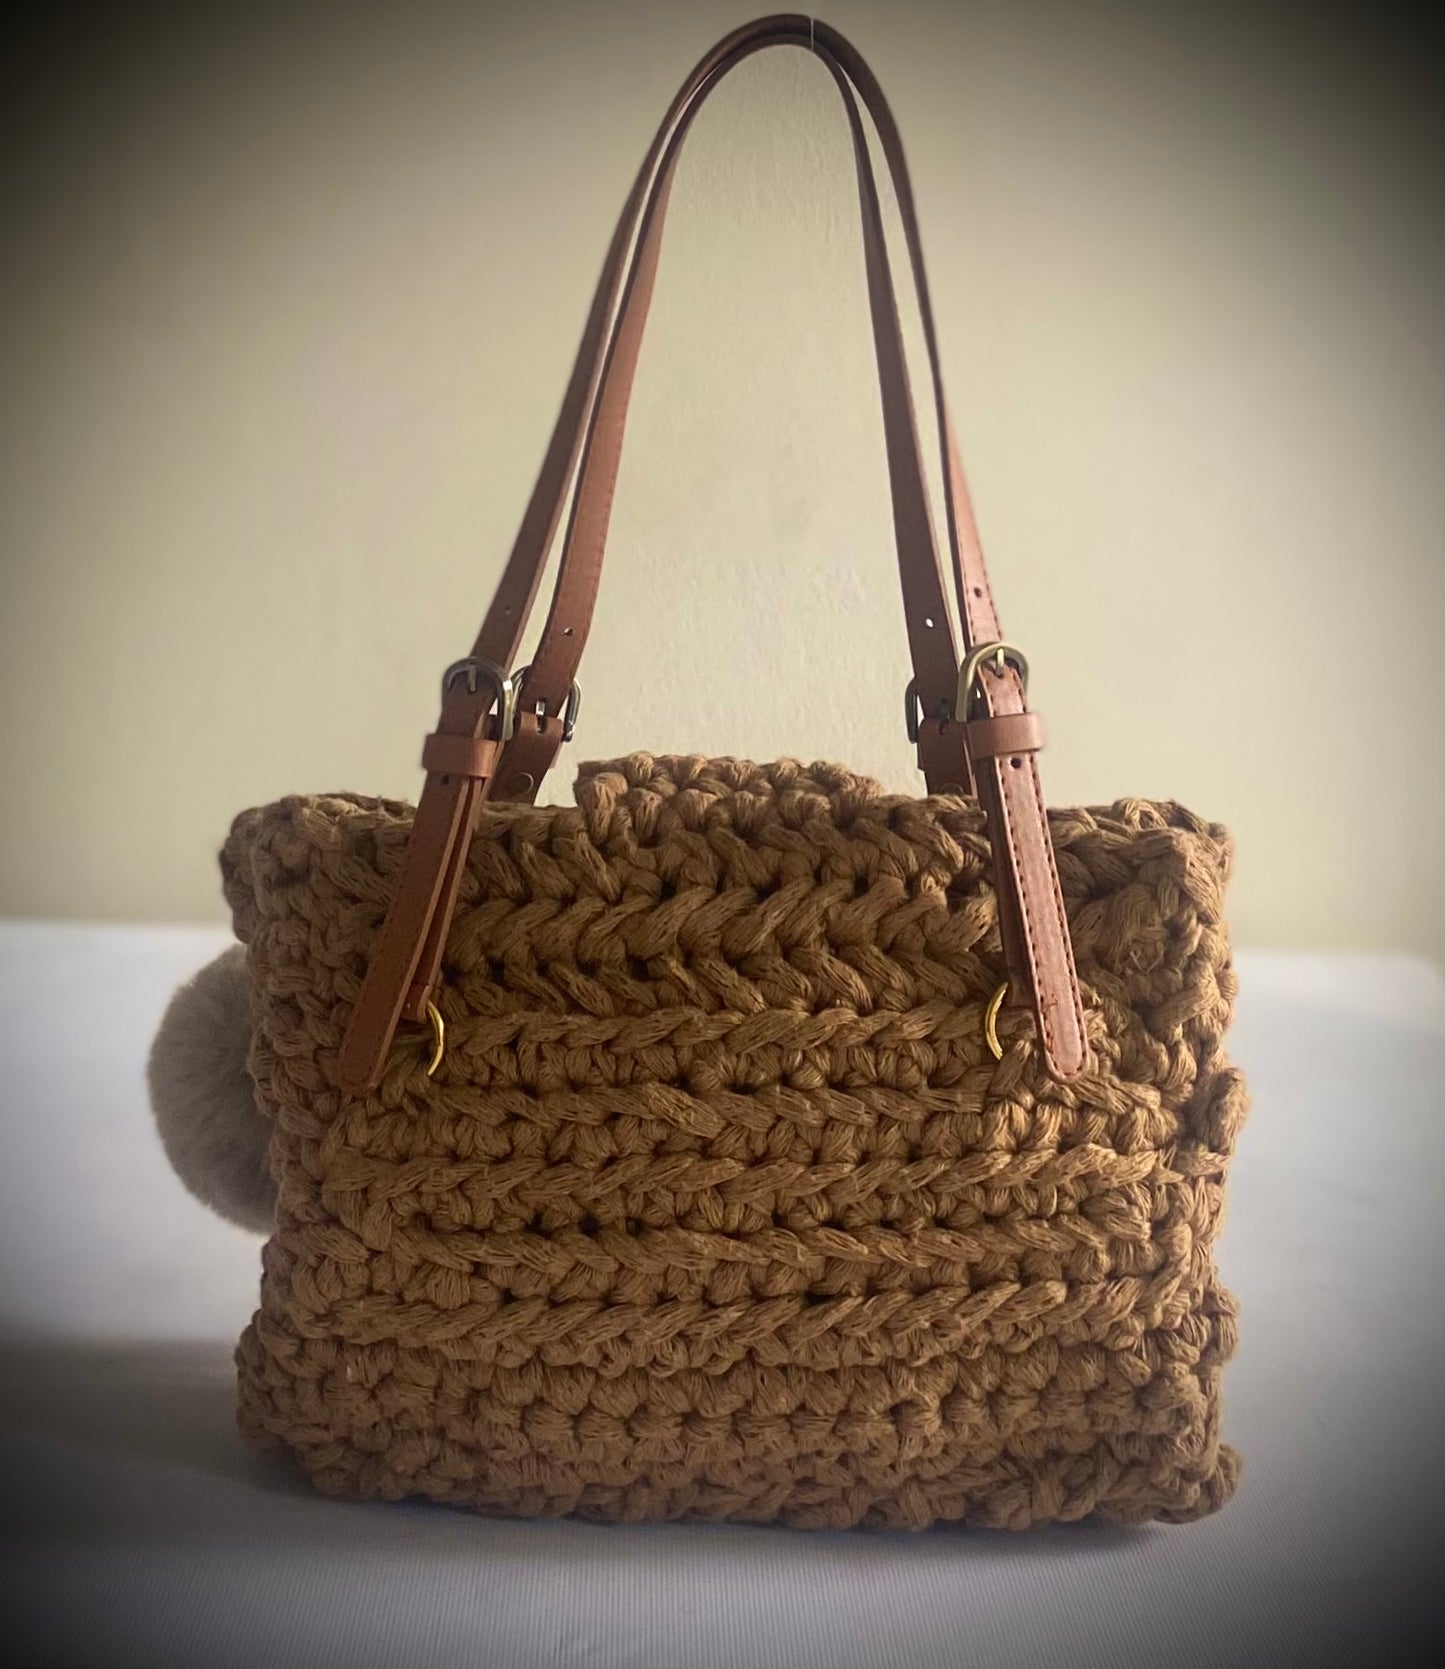 Classic crochet Handbag 1 of 1, Kreations by V Luxury Crochet Handbag